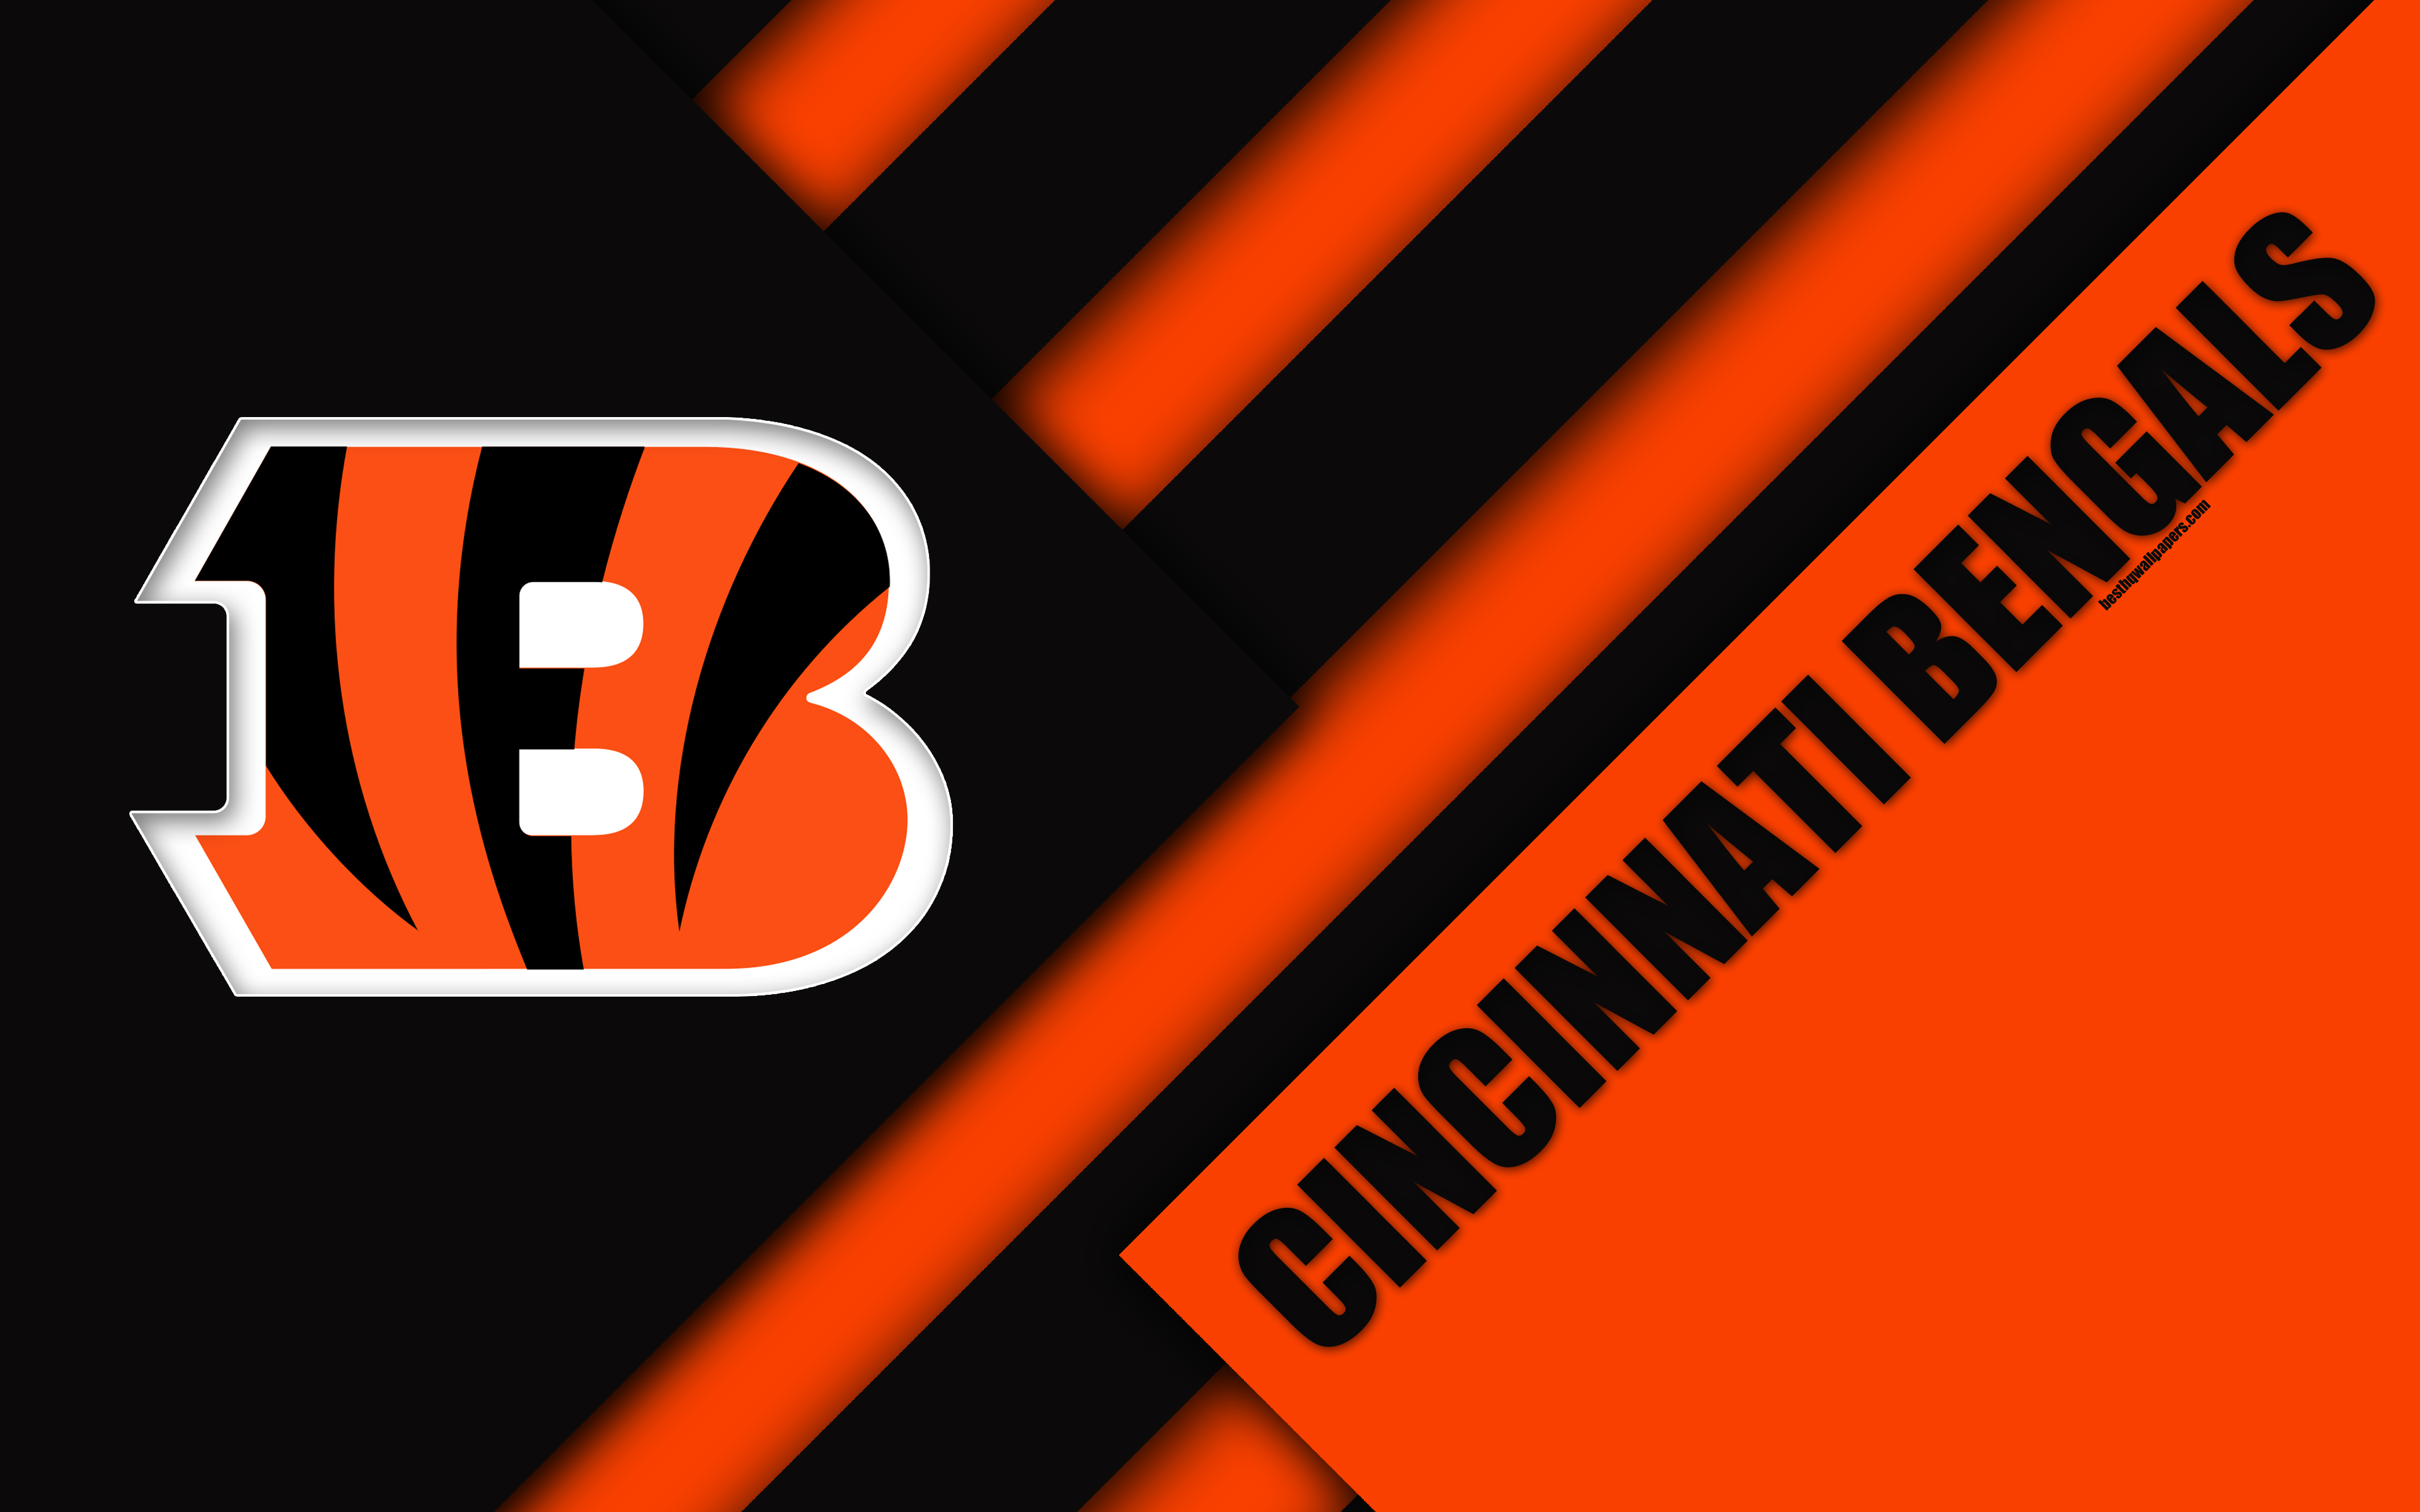 Download wallpapers Cincinnati Bengals 4k logo NFL black